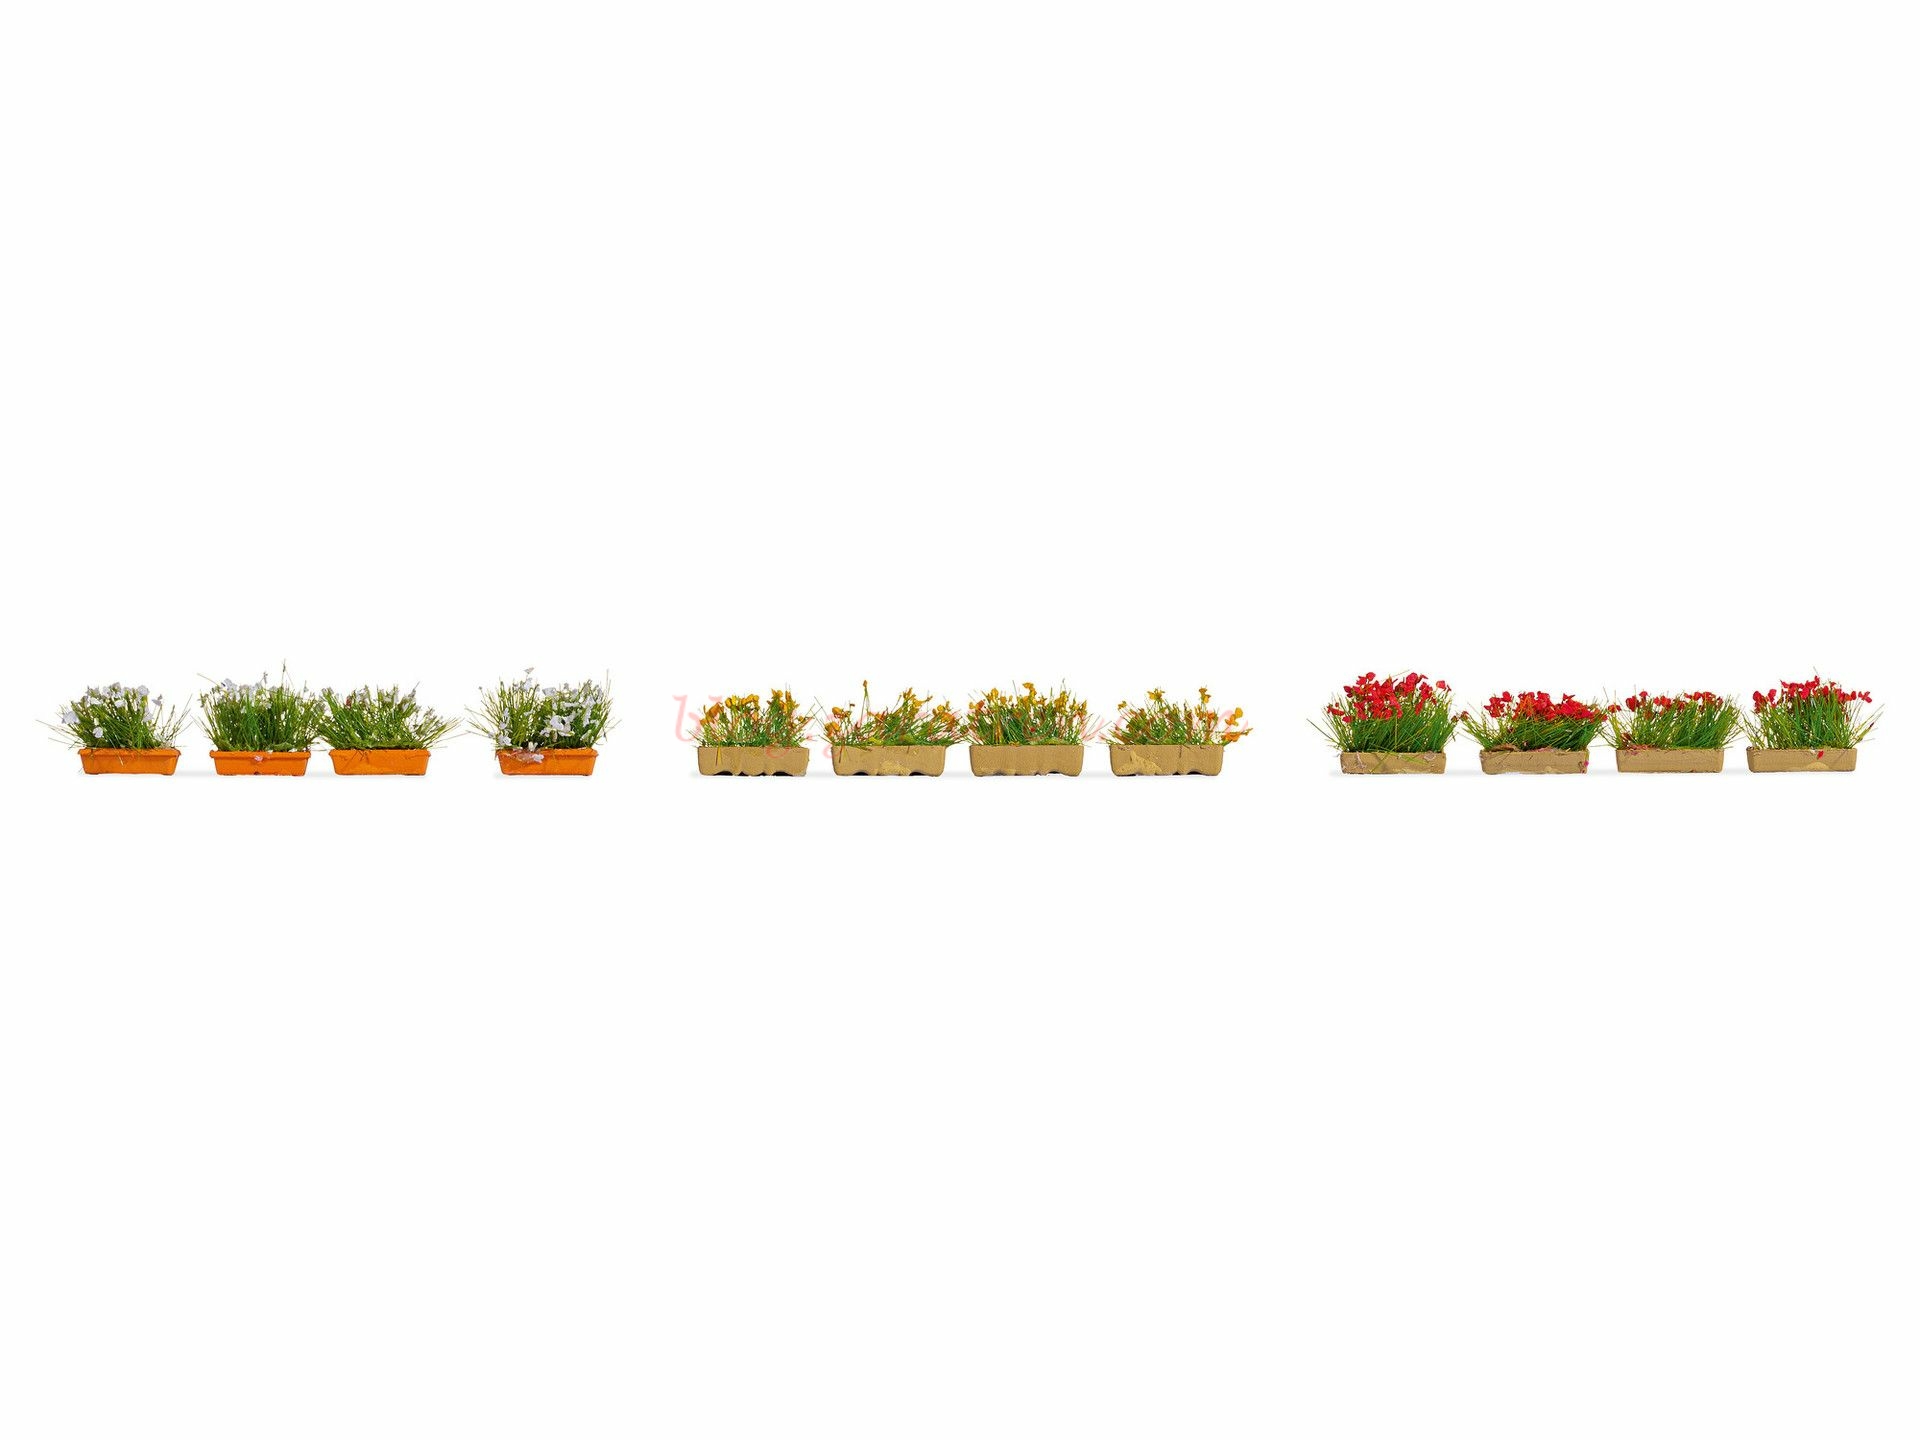 Noch – Jardineras que florecen en Rojo, Blanco y Amarillo, 12 Jardineras, Escala H0, Ref: 14009.